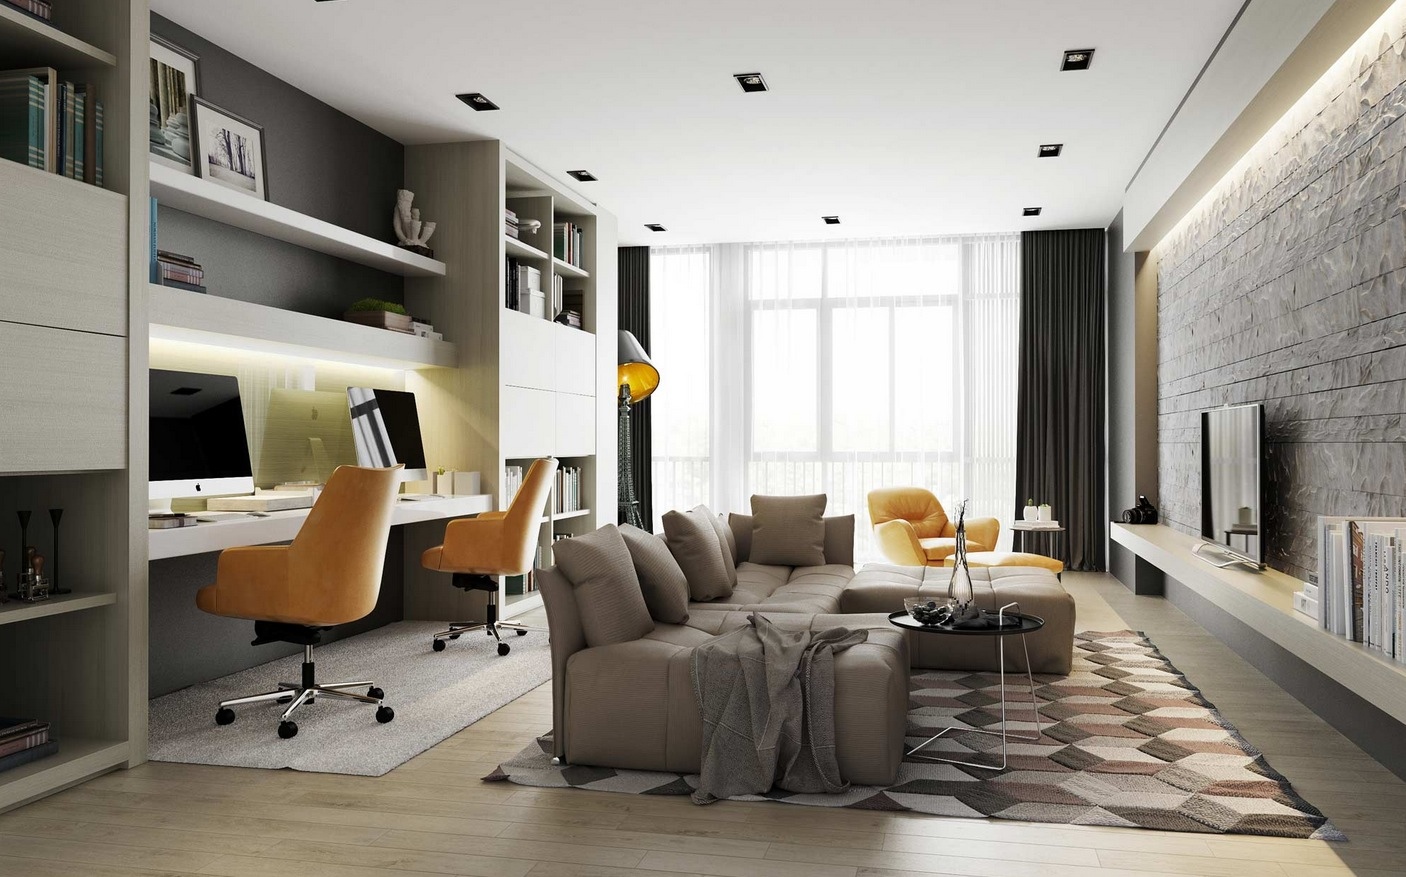 Thiết kế nội thất đưa năng lượng xanh vào không gian phòng khách đem lại sự thư giãn